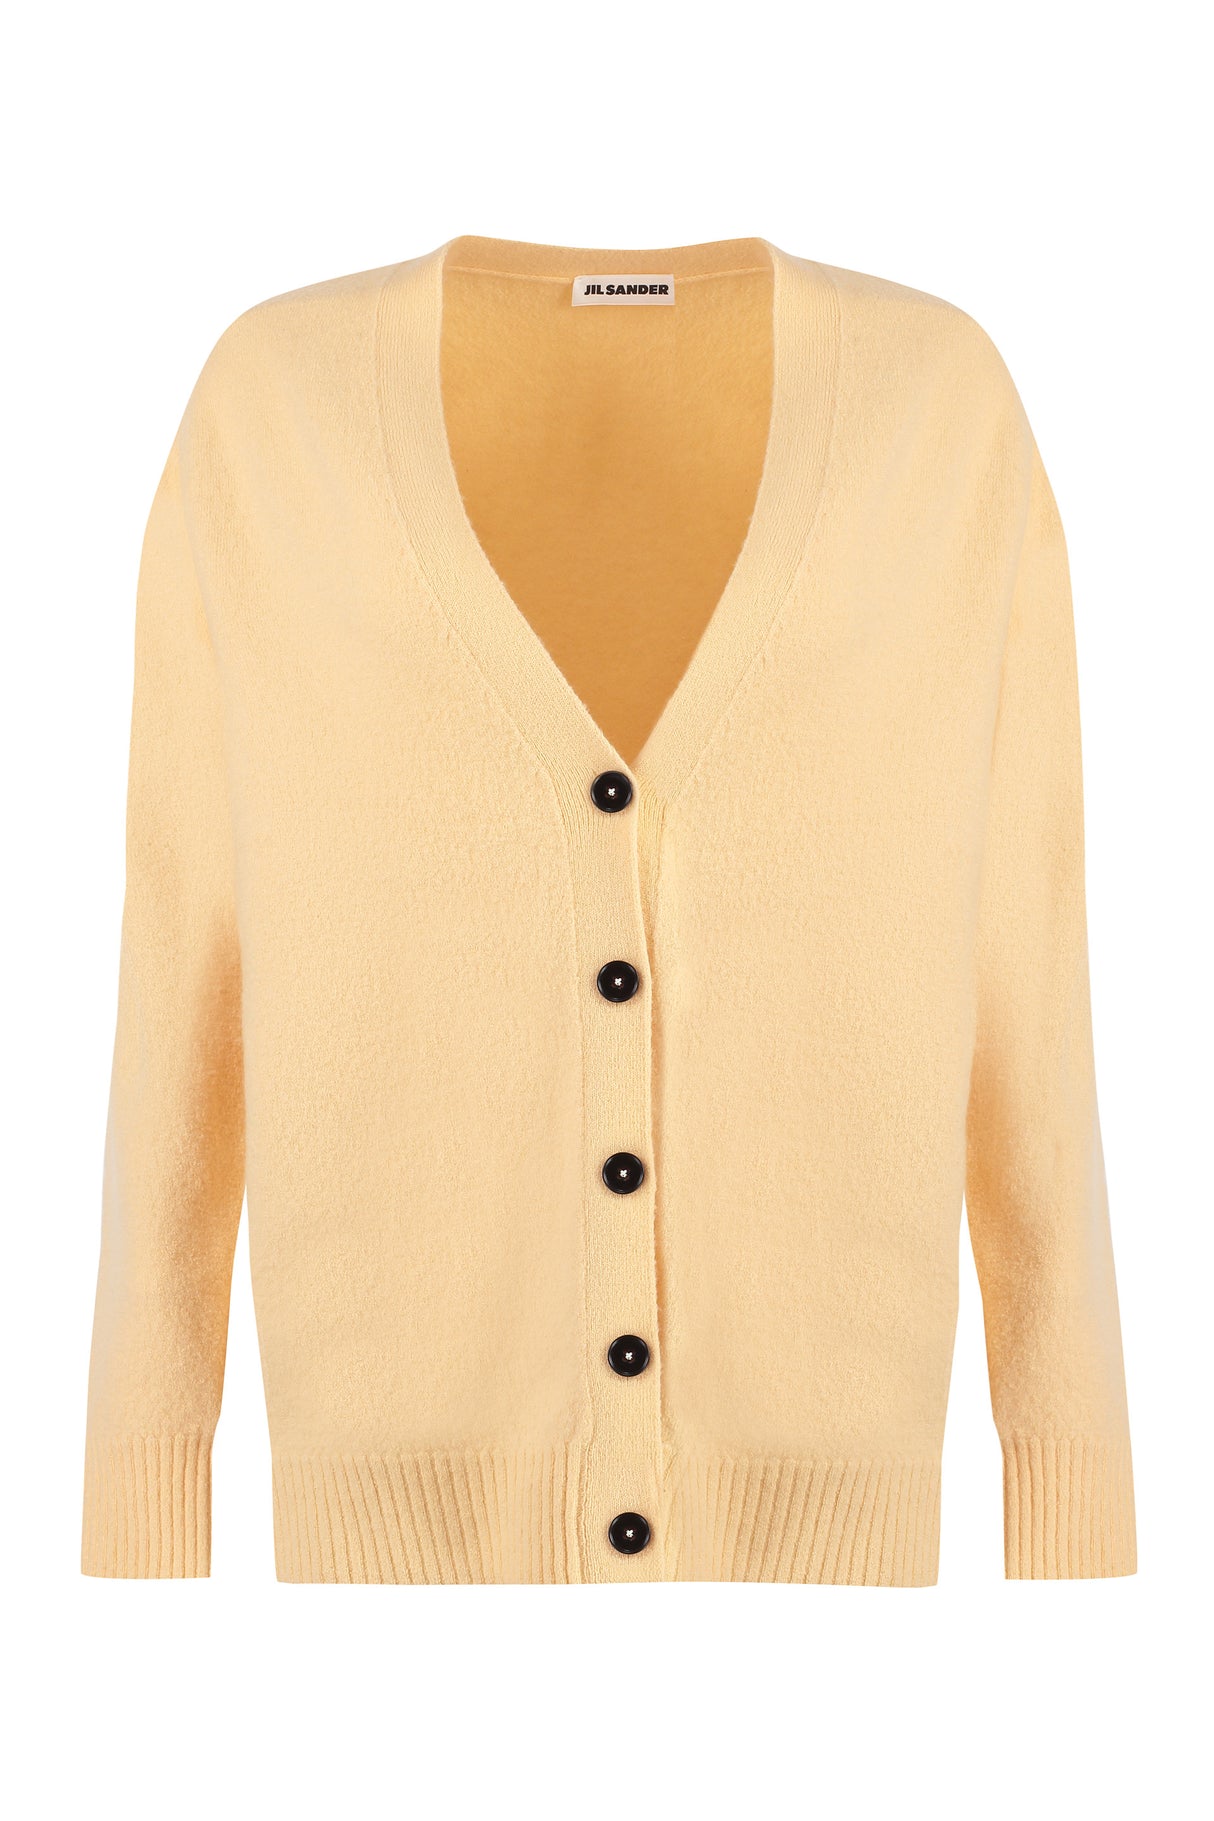 Áo cardigan lông cừu Merino SS24 thời trang cho phụ nữ màu cam sôi động